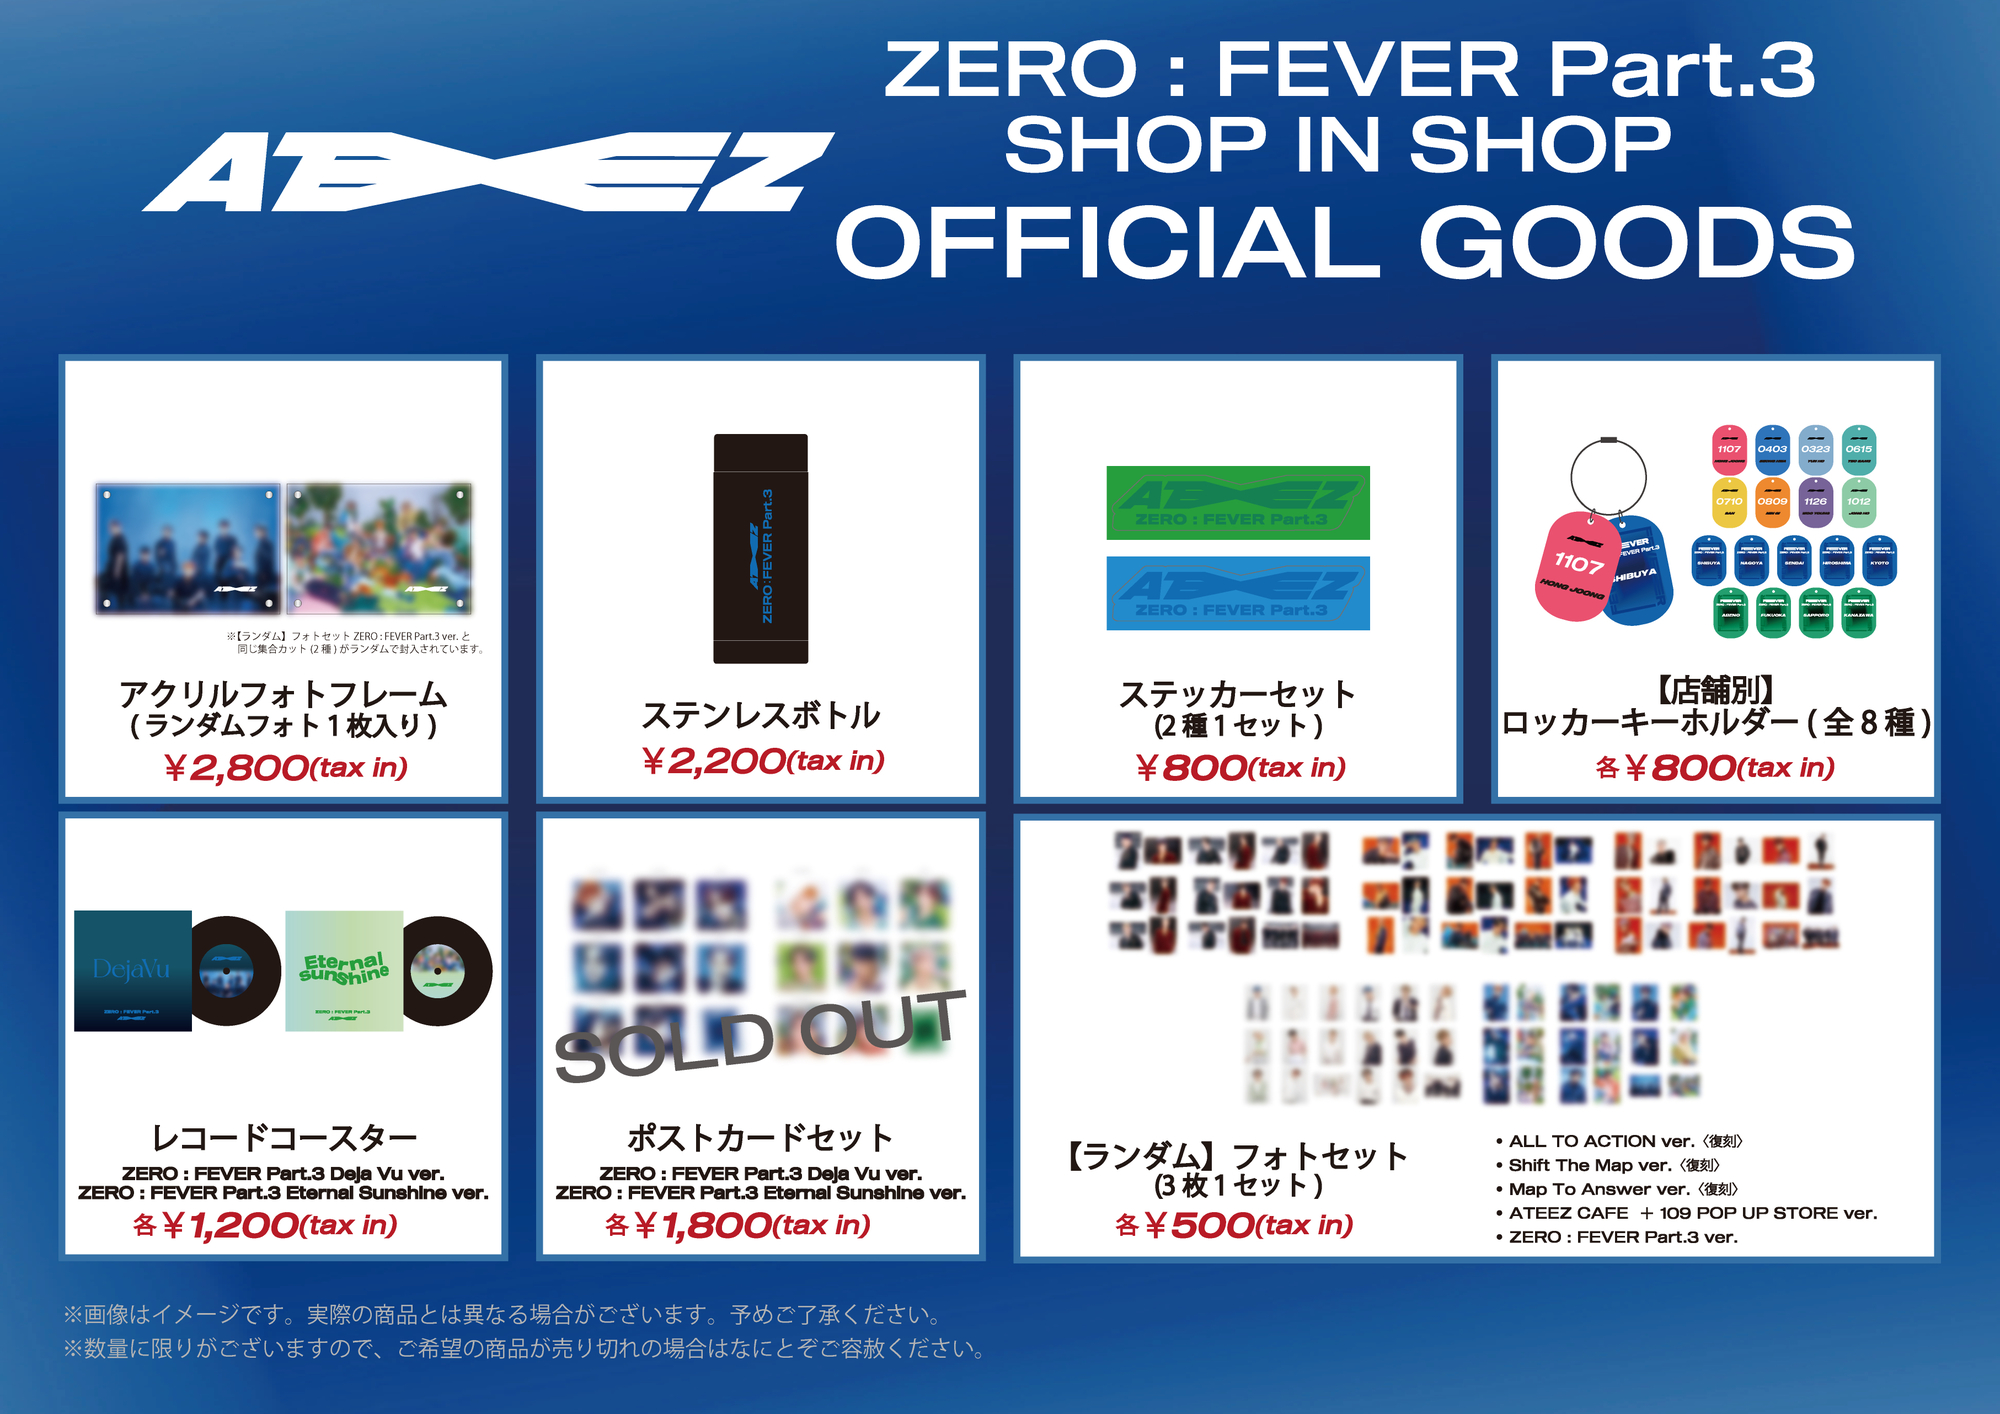 ATEEZ ZERO : FEVER Part.3 SHOP IN SHOPグッズオンライン販売開始 